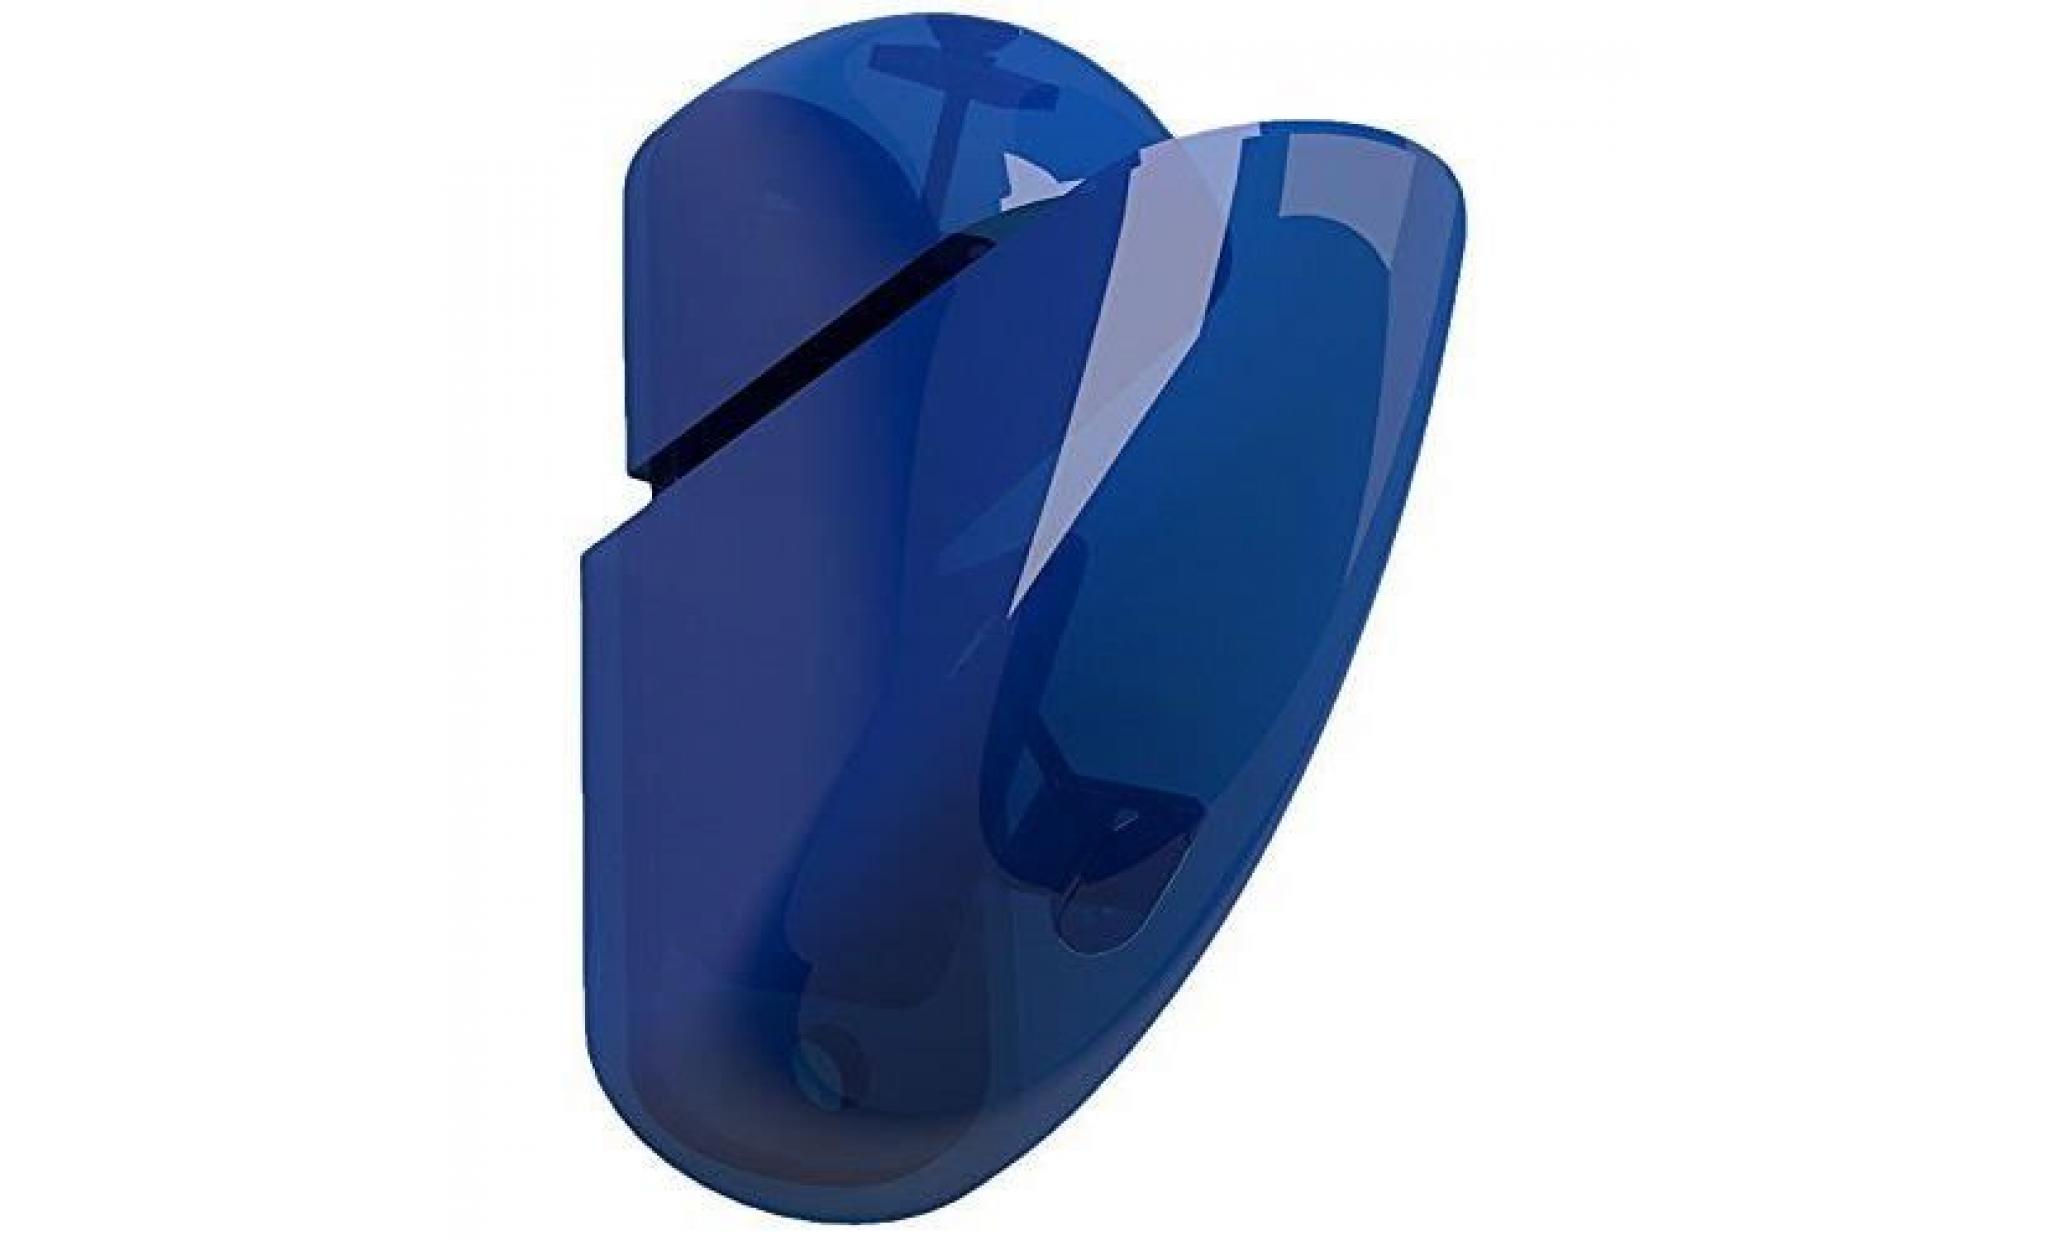 bolis italia aa1t009ha2b2 gondola lot de 2 consoles plastique bleu transparent 11,8 x 9 x 4,2 cm…